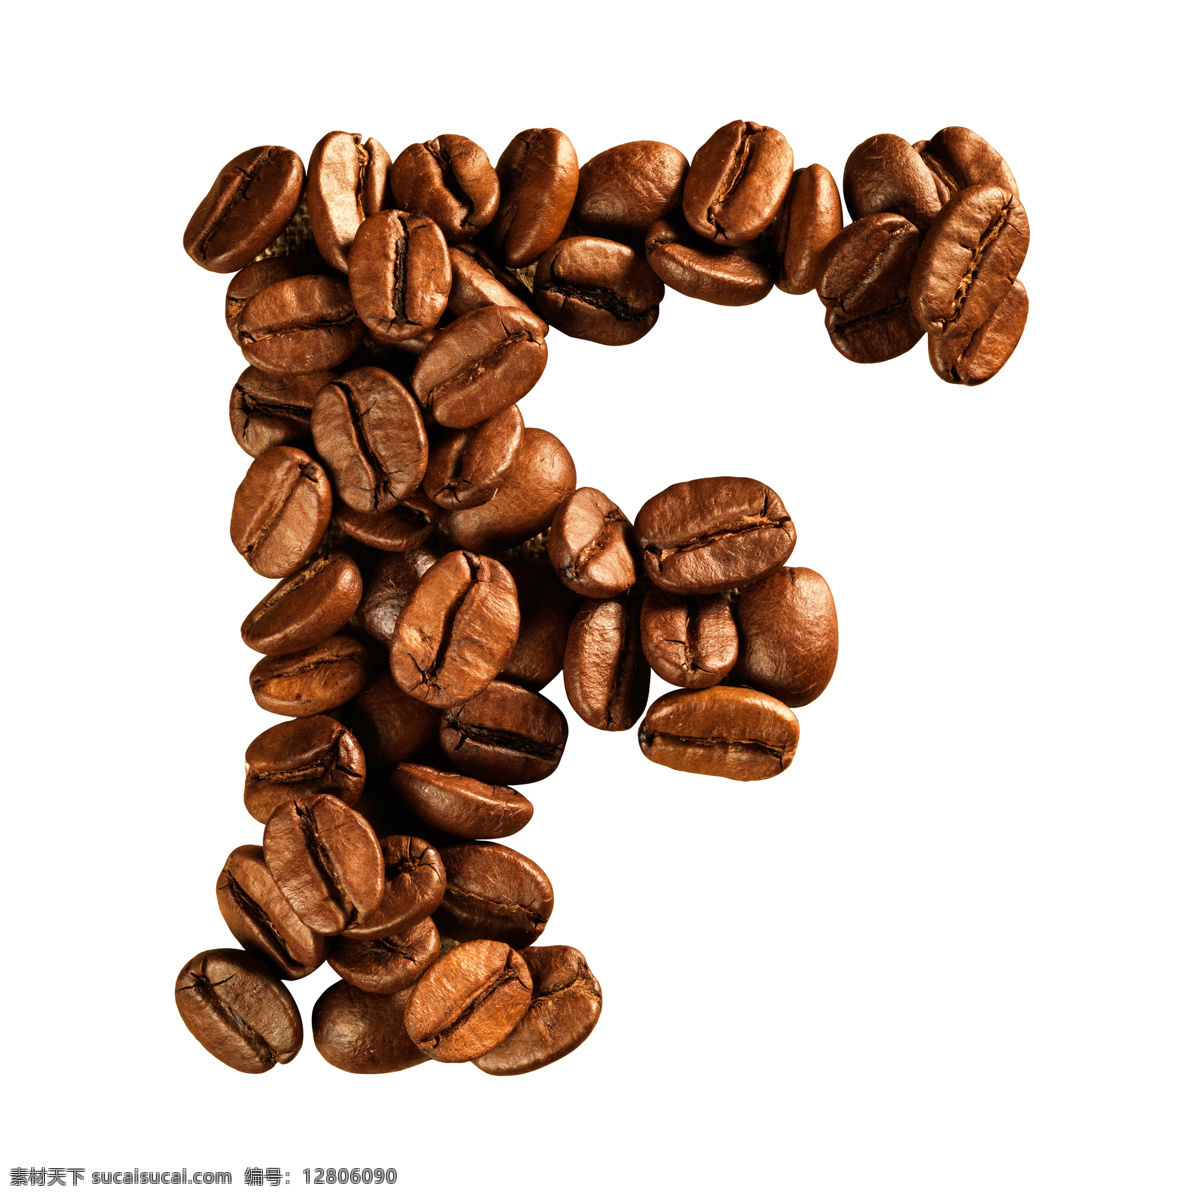 咖啡豆 组成 字母 f 咖啡 文字 艺术字体 食材原料 书画文字 文化艺术 白色